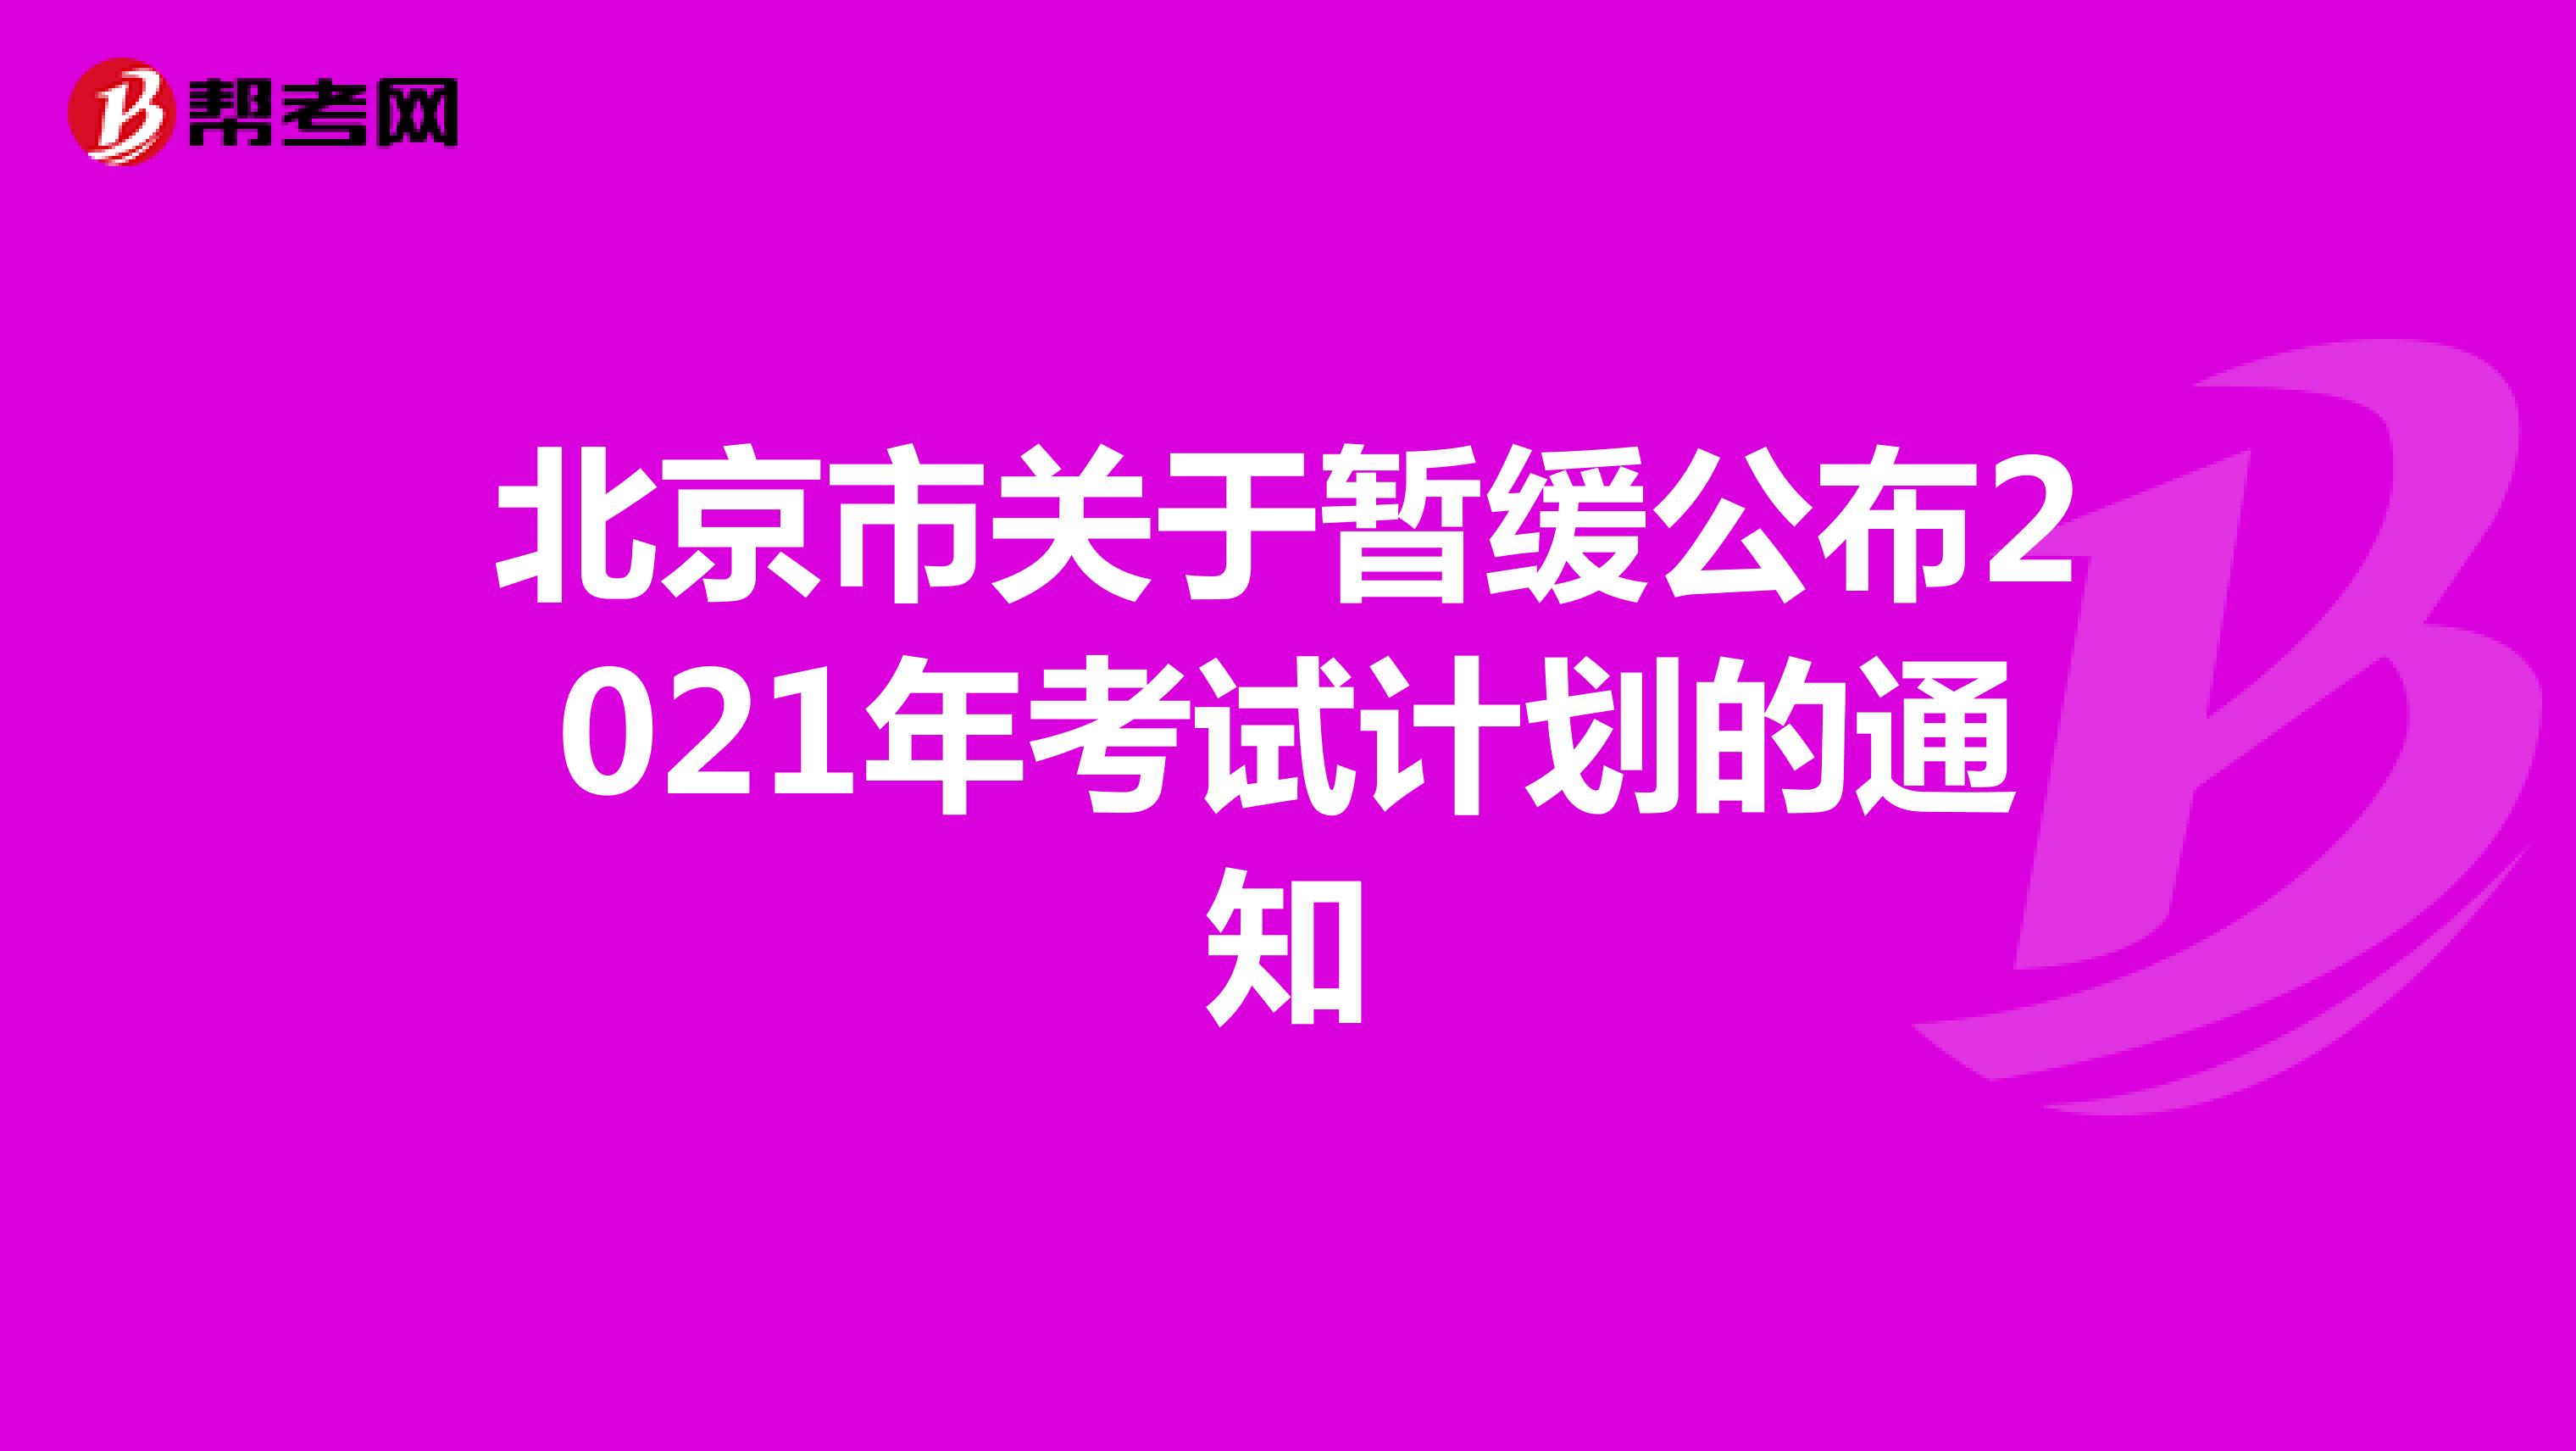 北京市关于暂缓公布2021年考试计划的通知